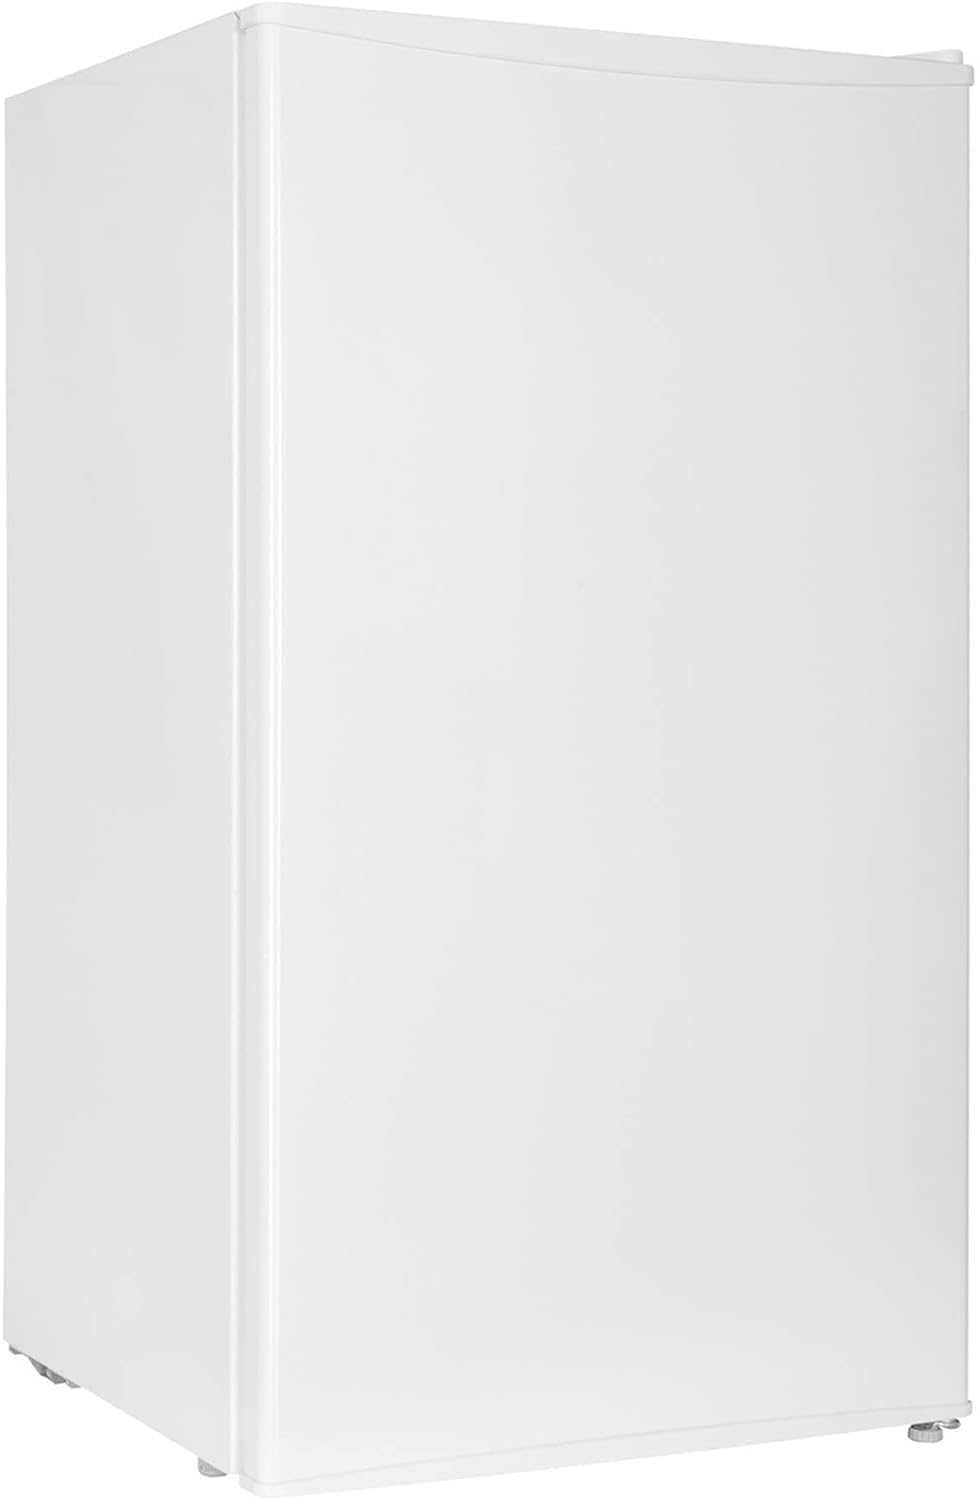 COMFEE RCD132WH1 - Frigorifero, altezza 85 cm, 107 kWh/anno, 93 L, colore: Bianco